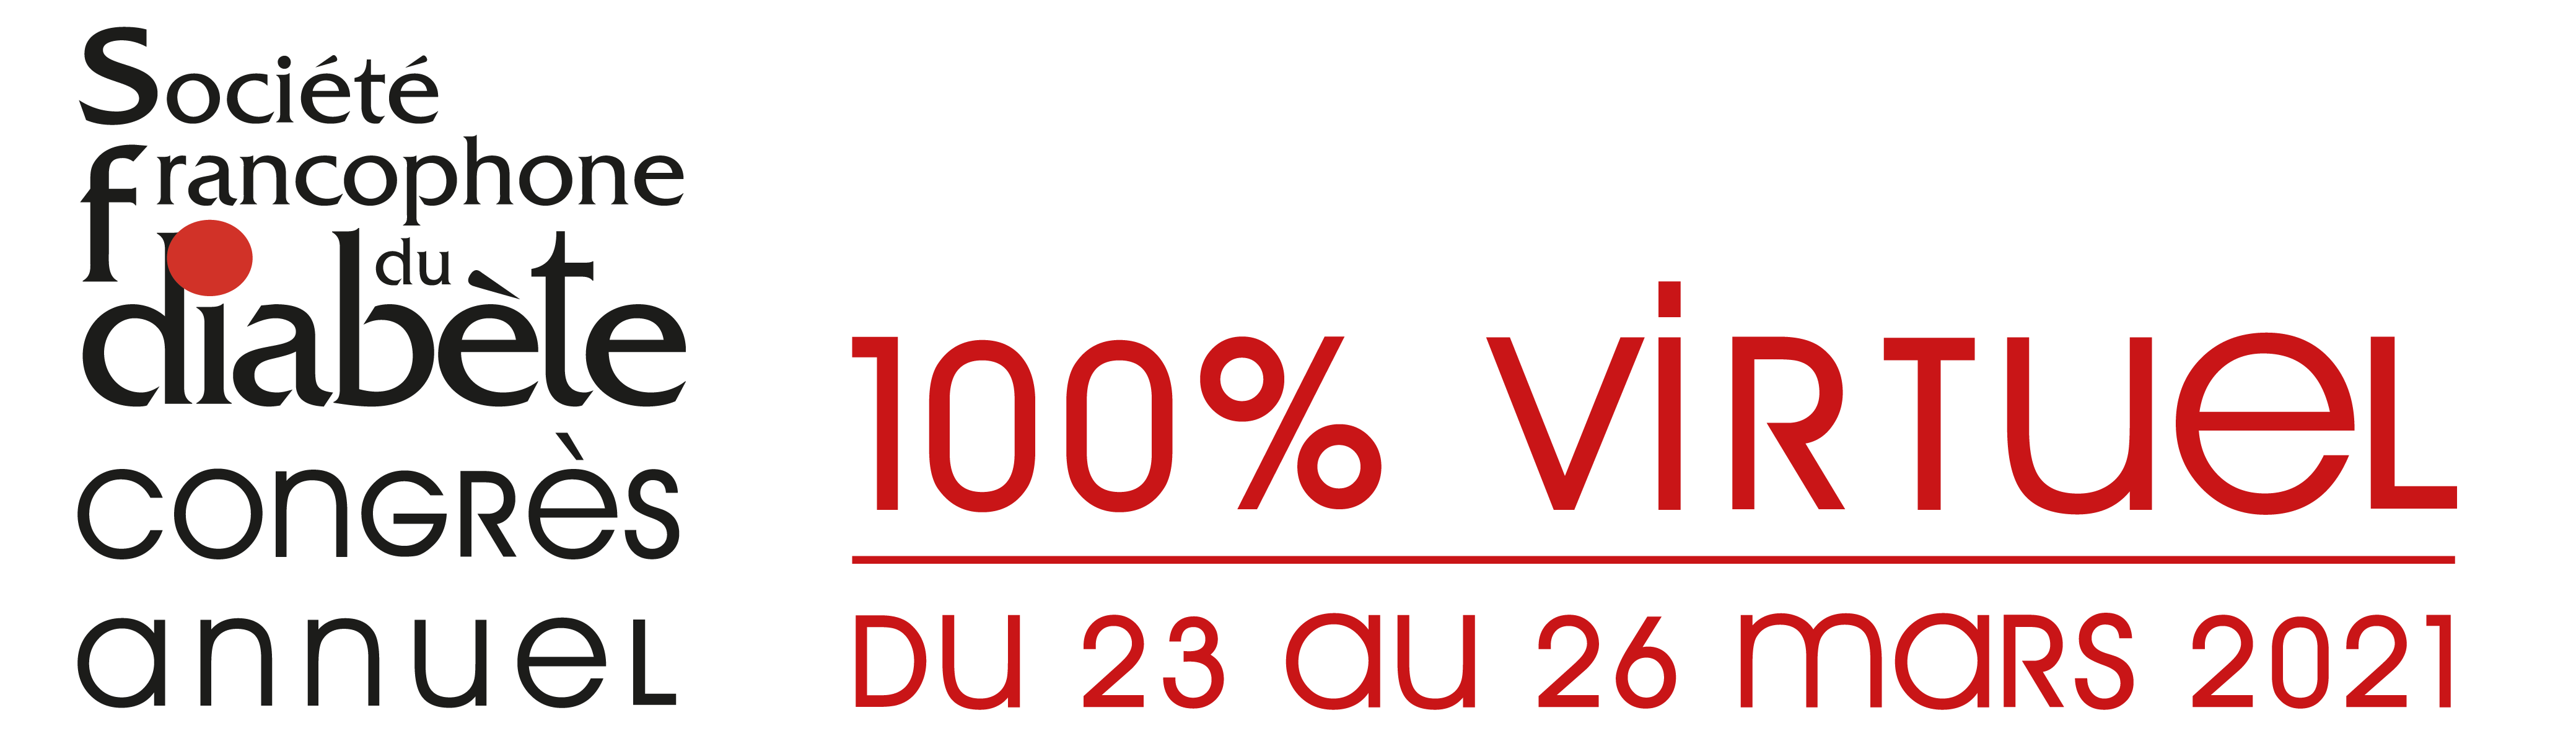 Congrès annuel de la Société Francophone du Diabète SFD 2021